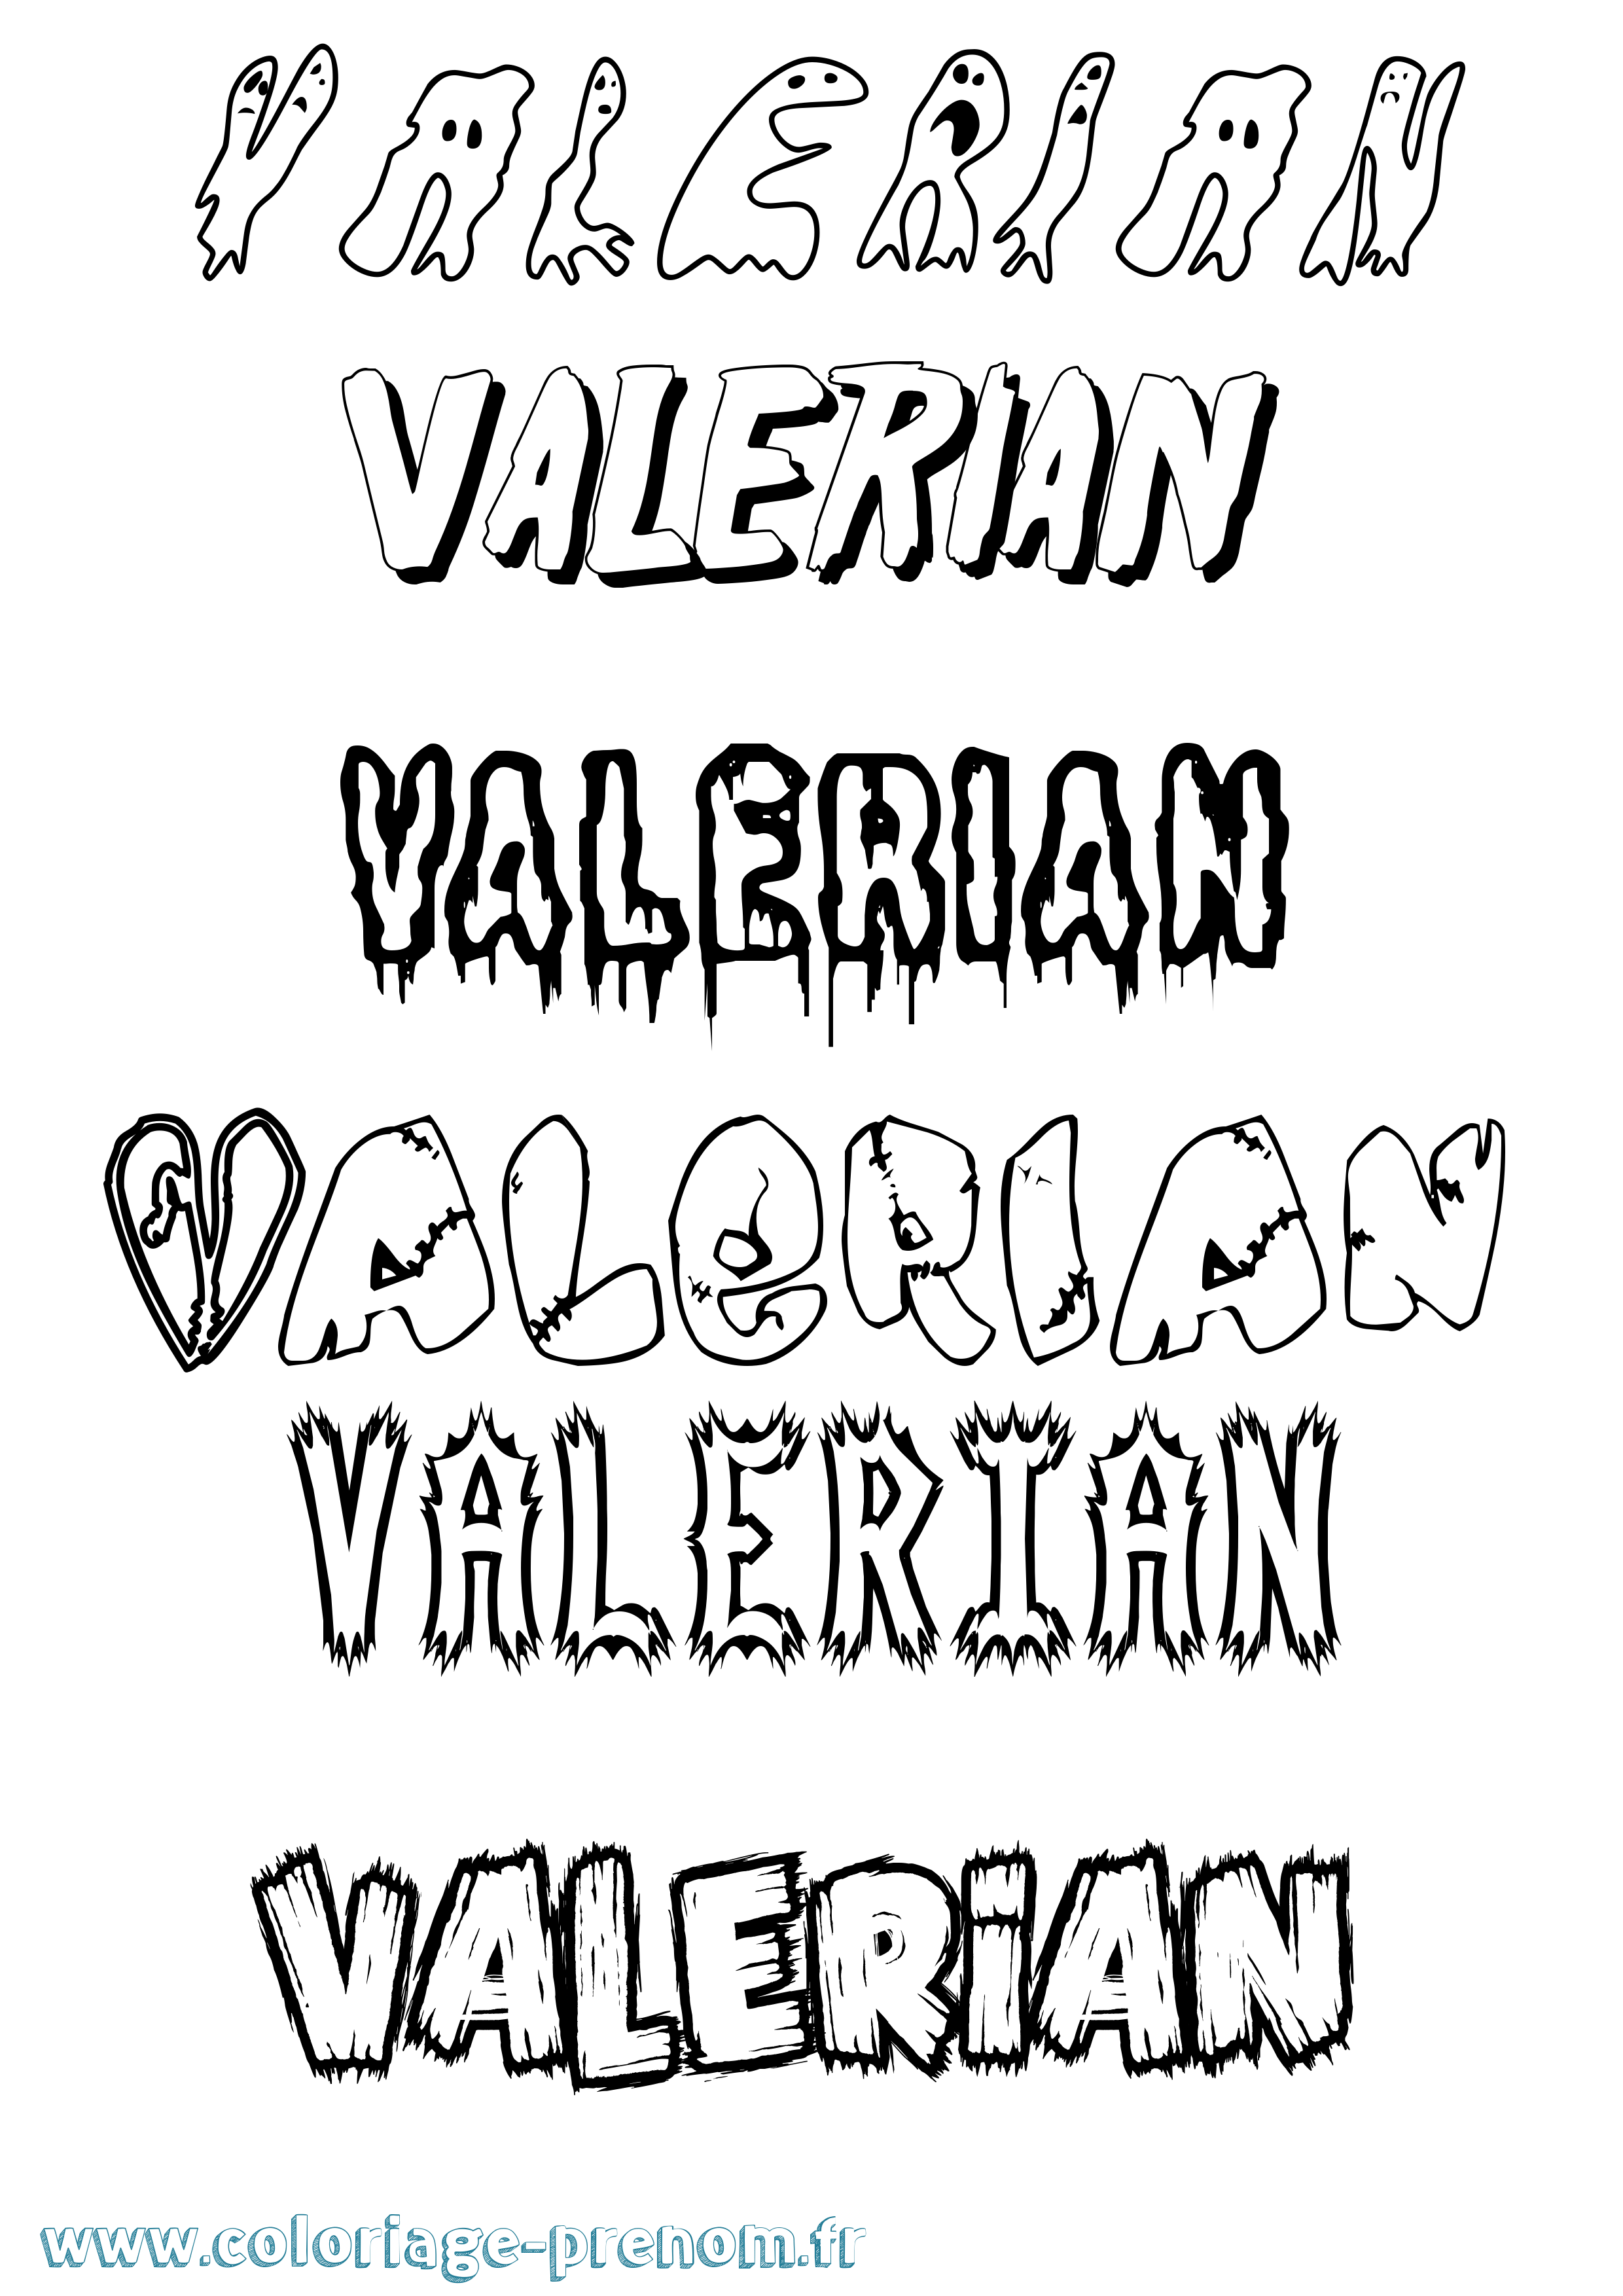 Coloriage prénom Valerian Frisson